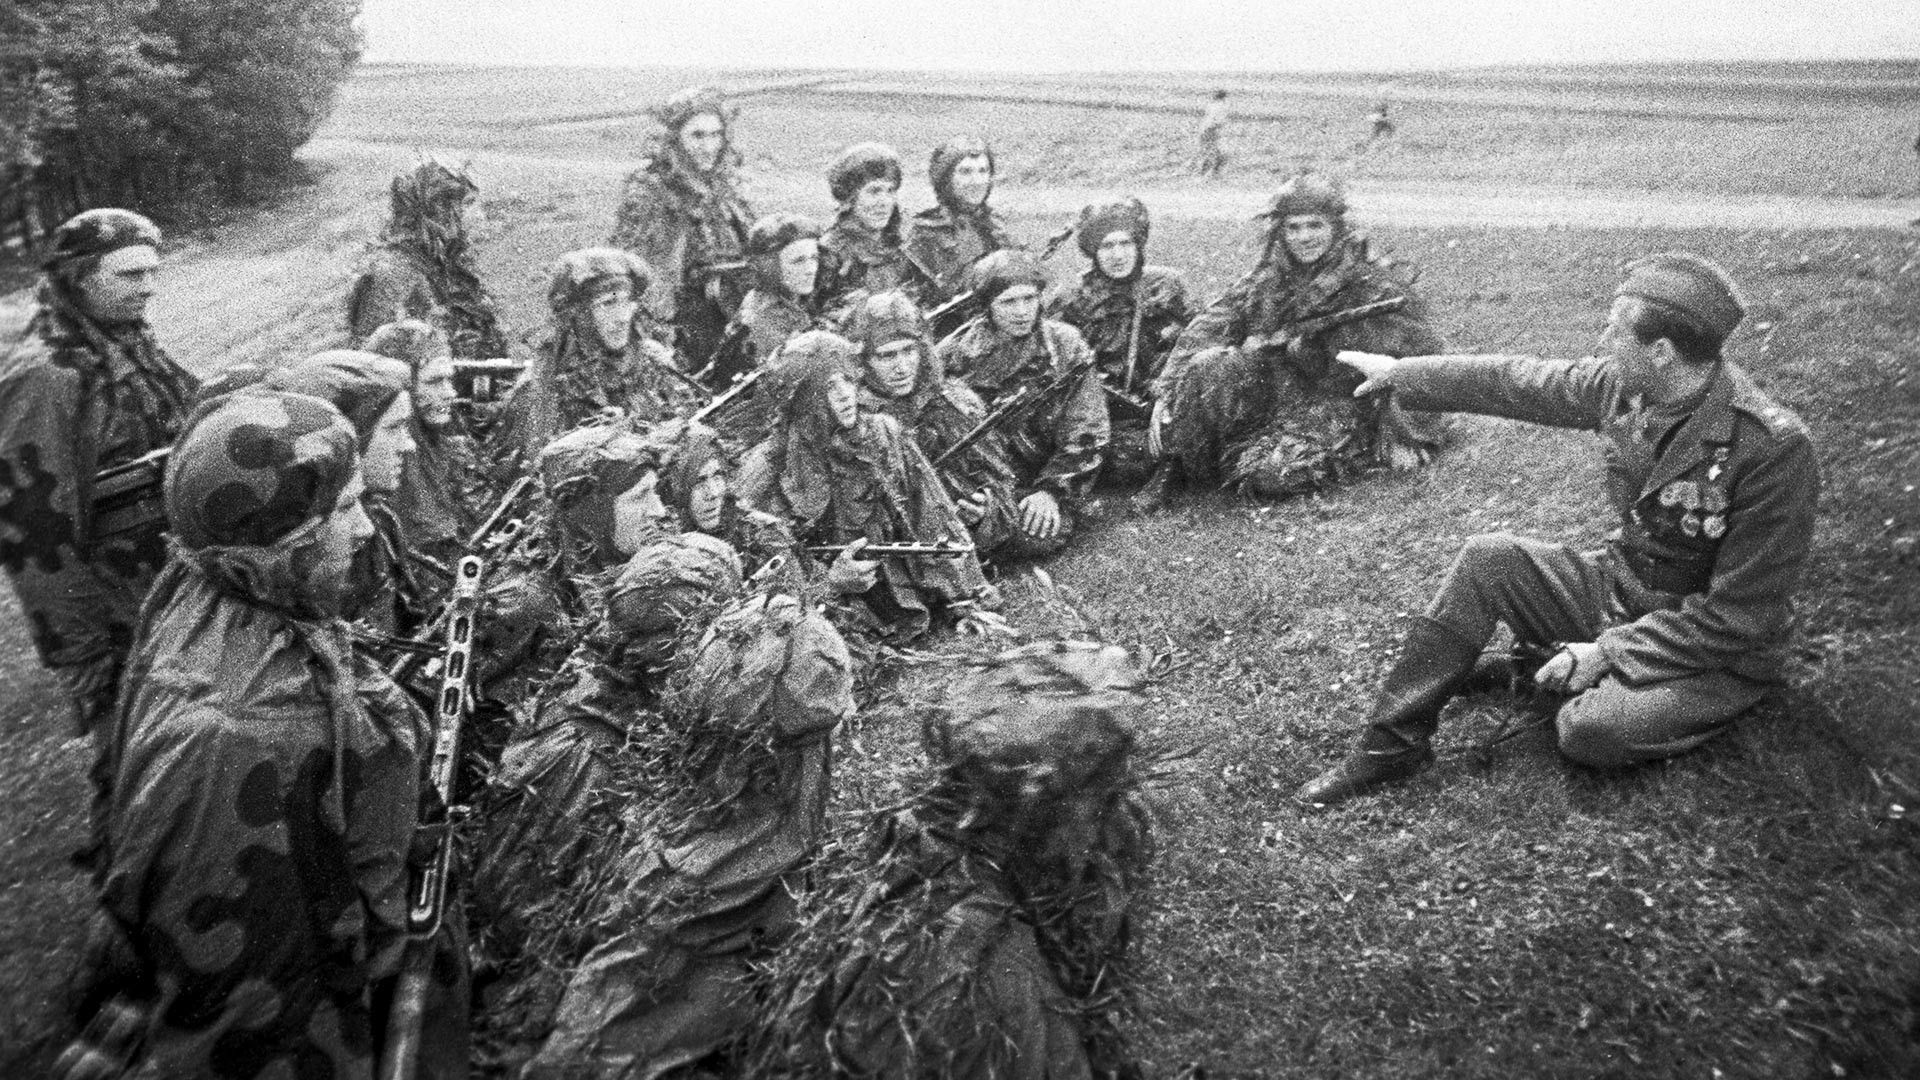 Велики отаџбински рат 1941-1945. Прашка офанзива (6-11. маја 1945). Антонин Сохор, командир чете Првог пешадијског батаљона Прве засебне чехословачке пешадијске бригаде у склопу 51. стрељачког корупса 38. армије Првог Украјинског фронта.